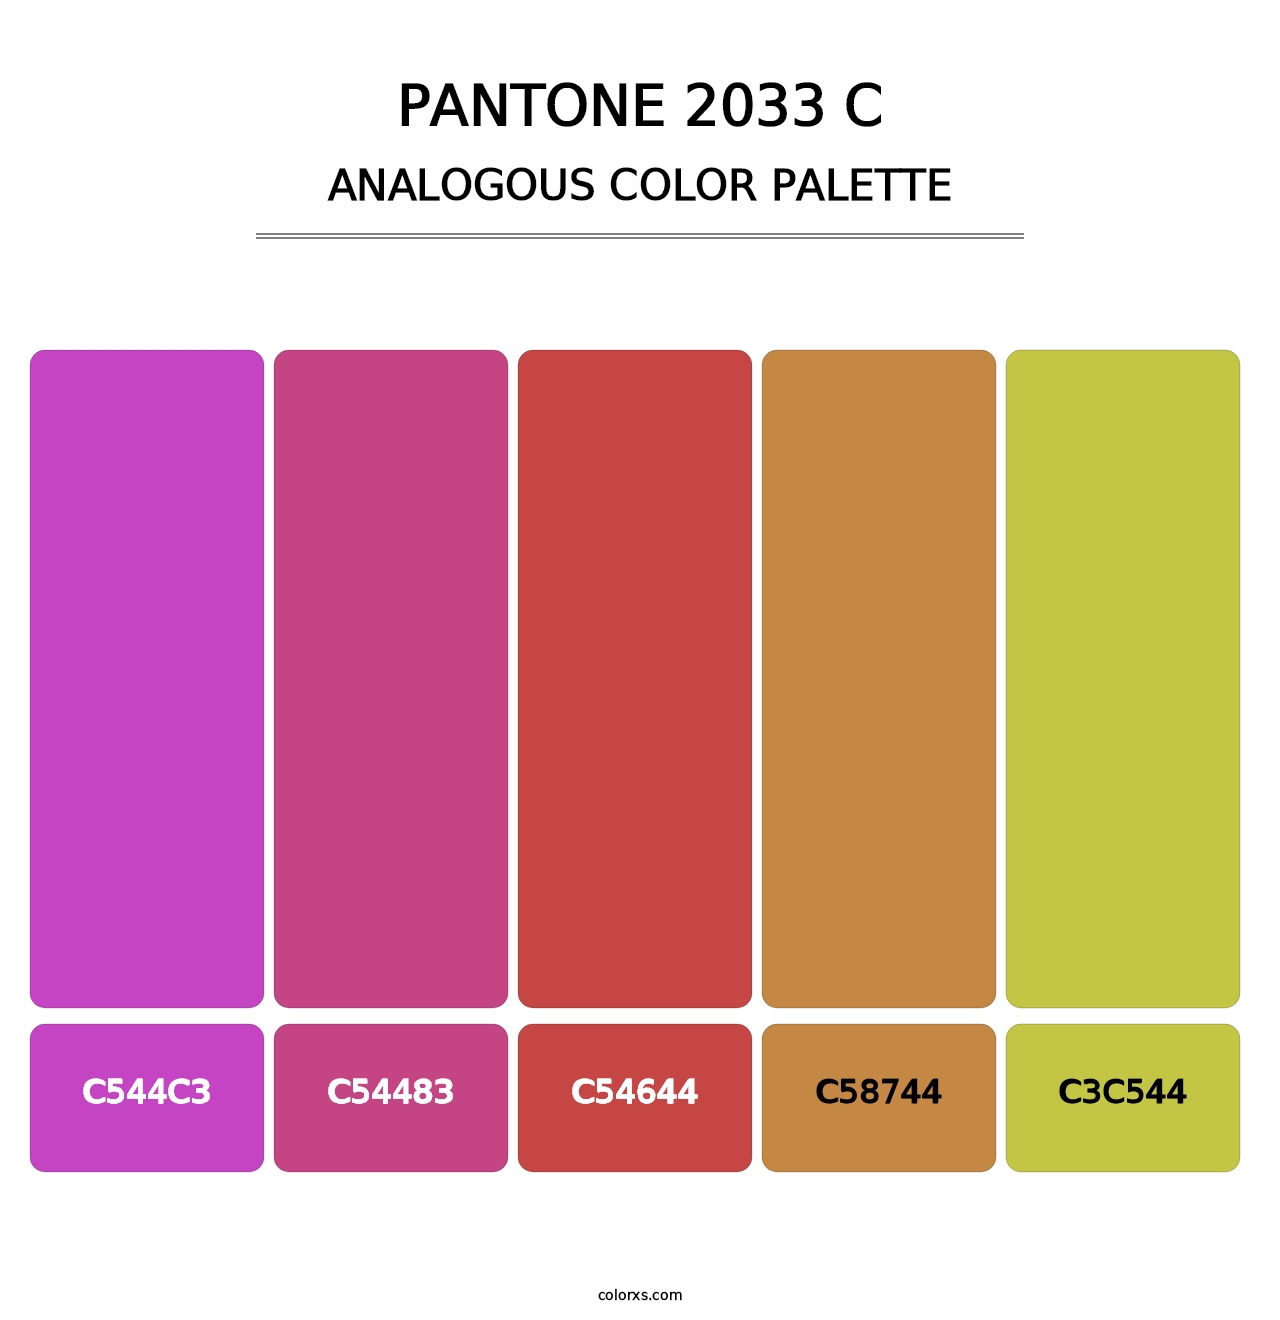 PANTONE 2033 C - Analogous Color Palette